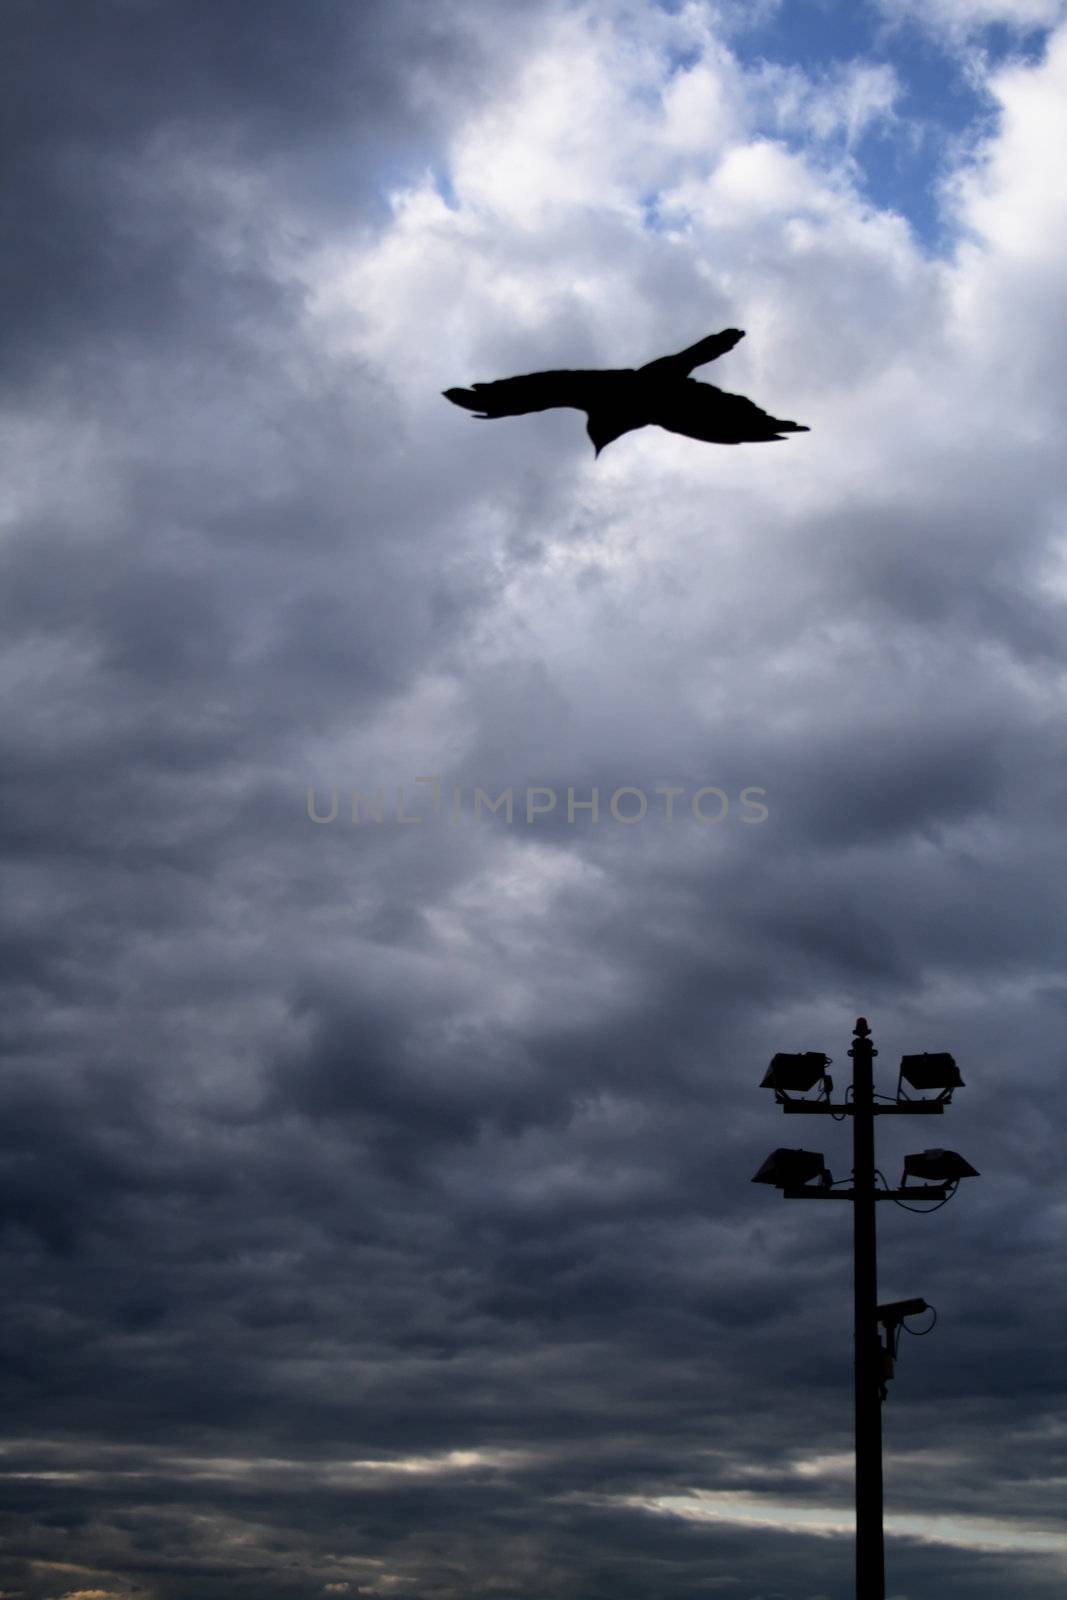 Evening flight ravens by Nickondr